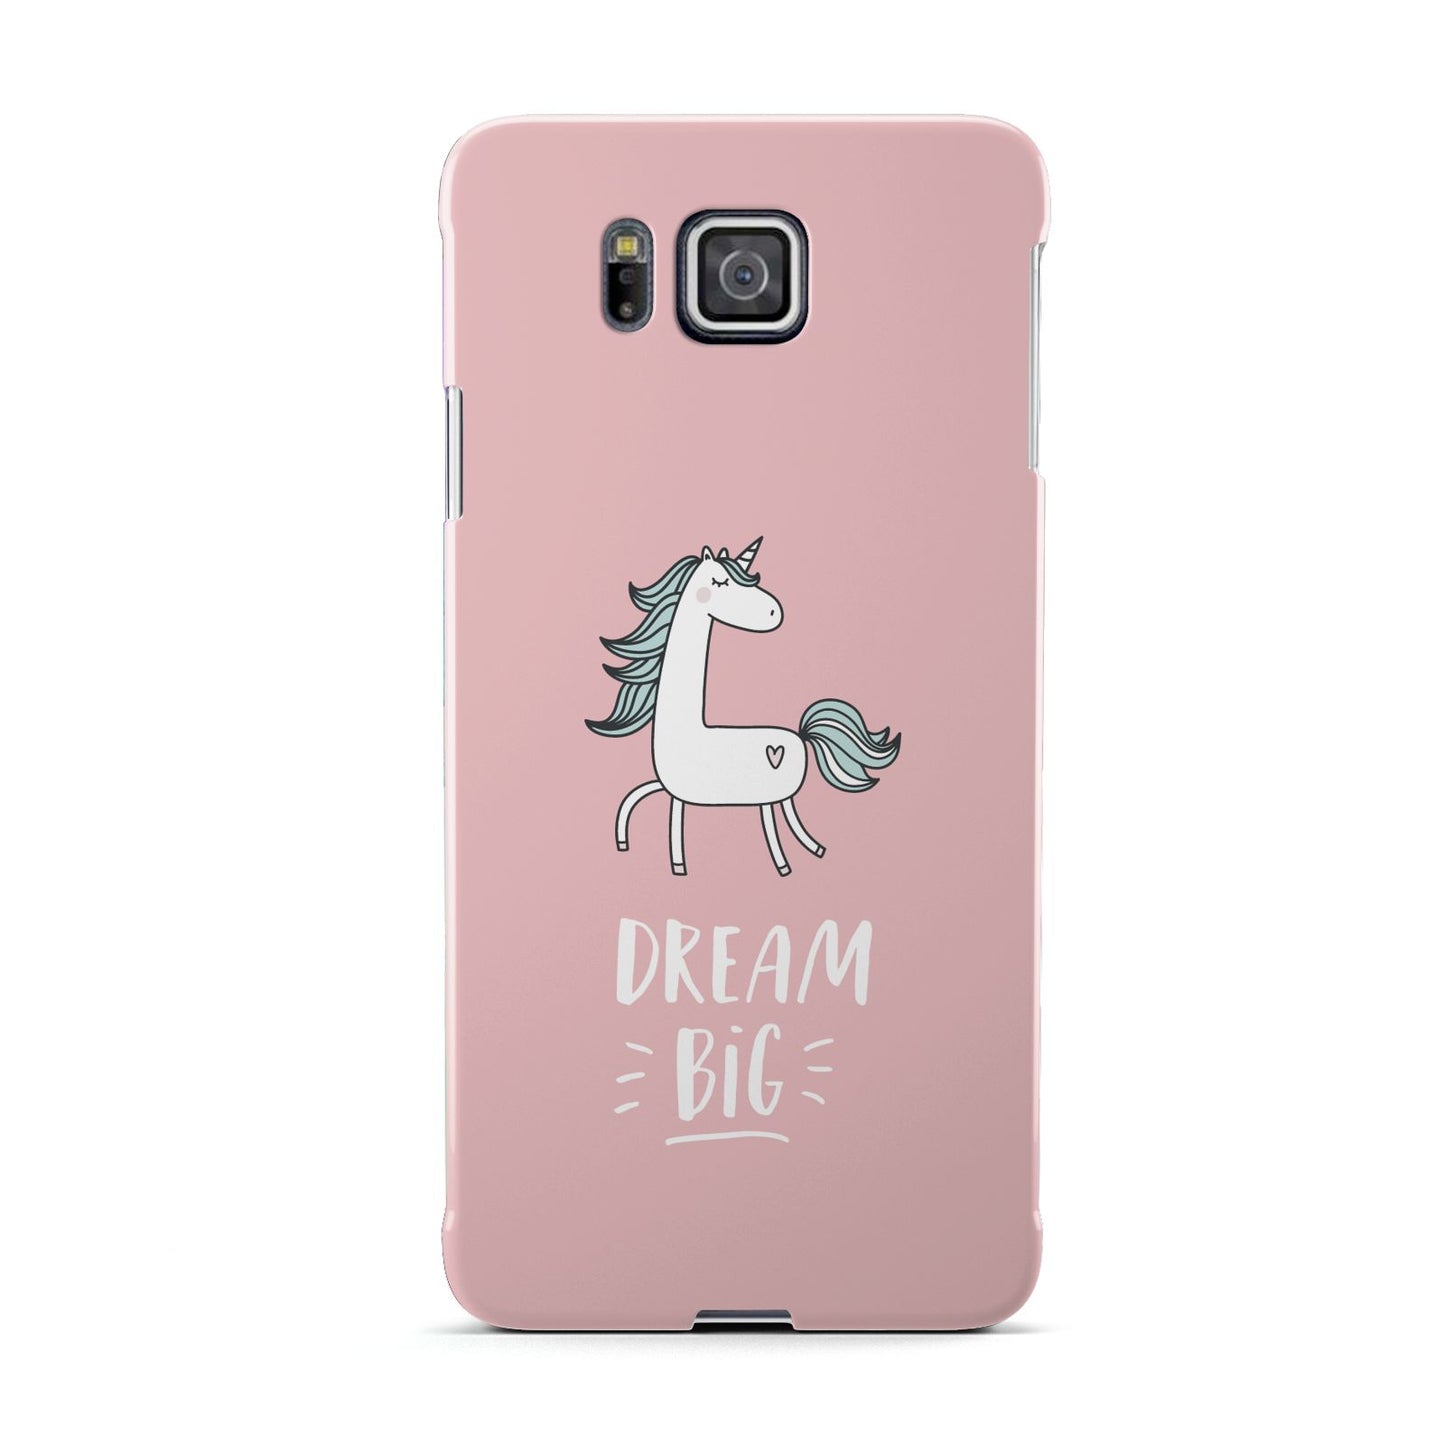 Unicorn Print Dream Big Samsung Galaxy Alpha Case